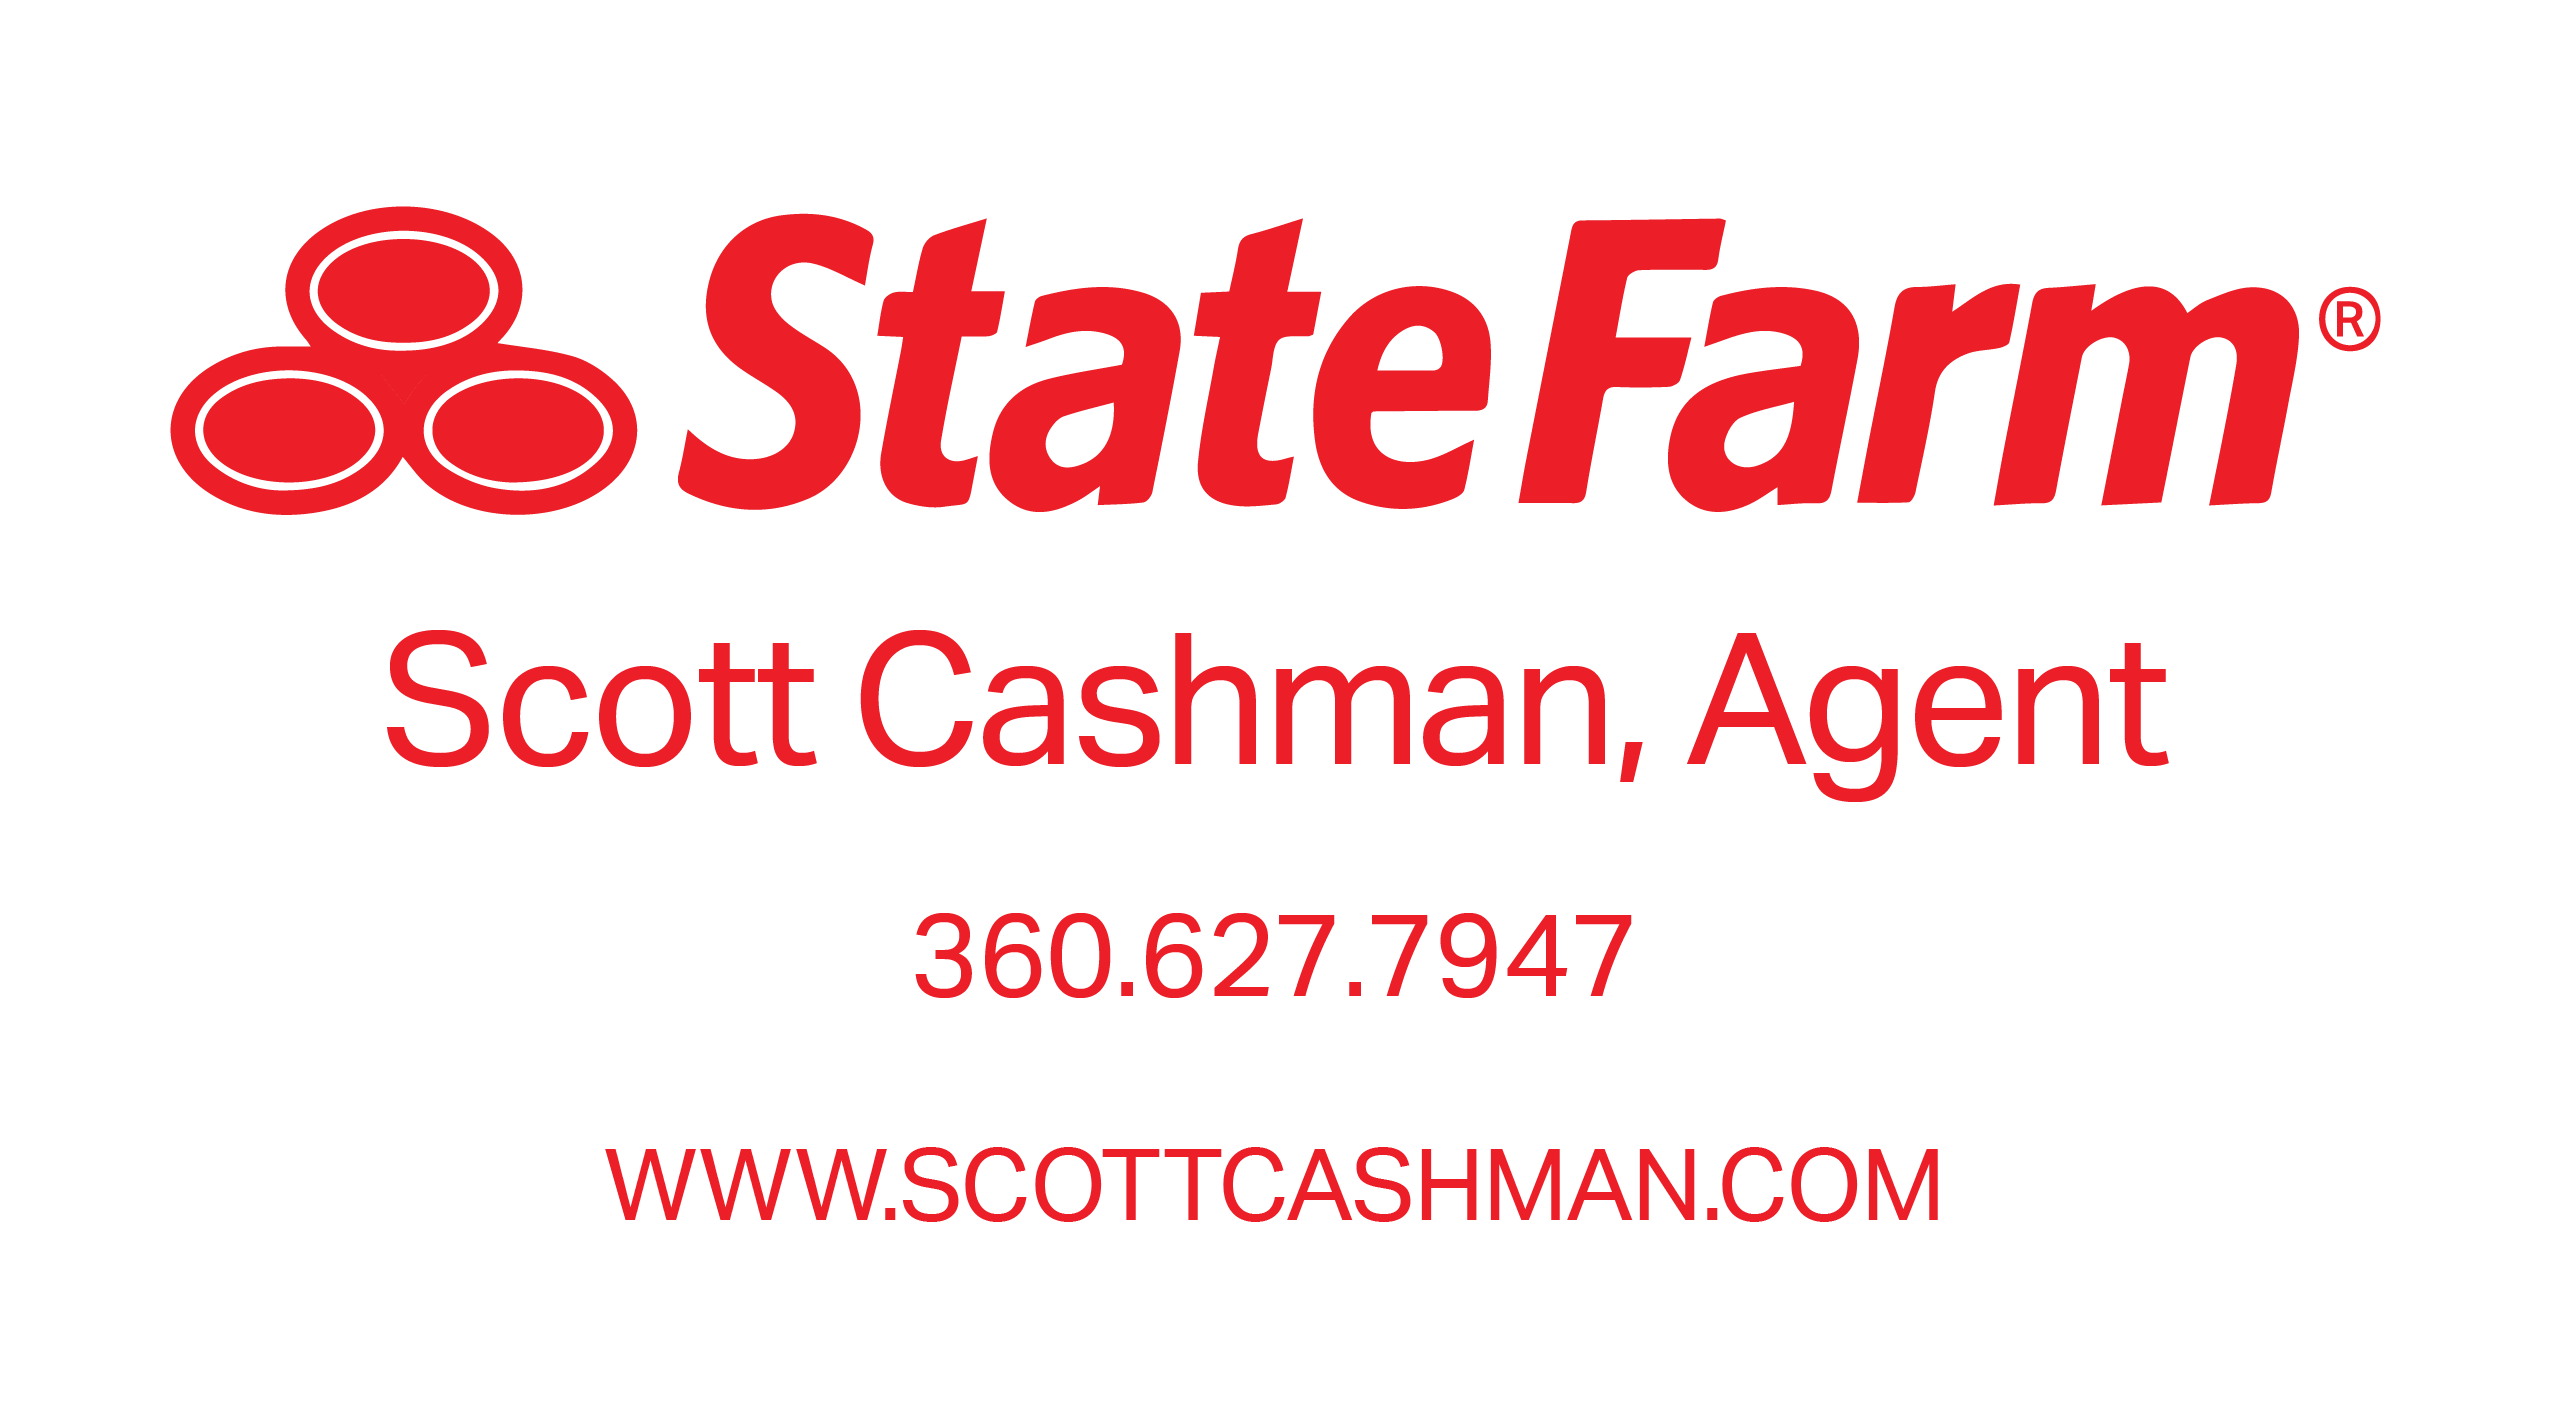 ScottCashman-StateFarm-01.png